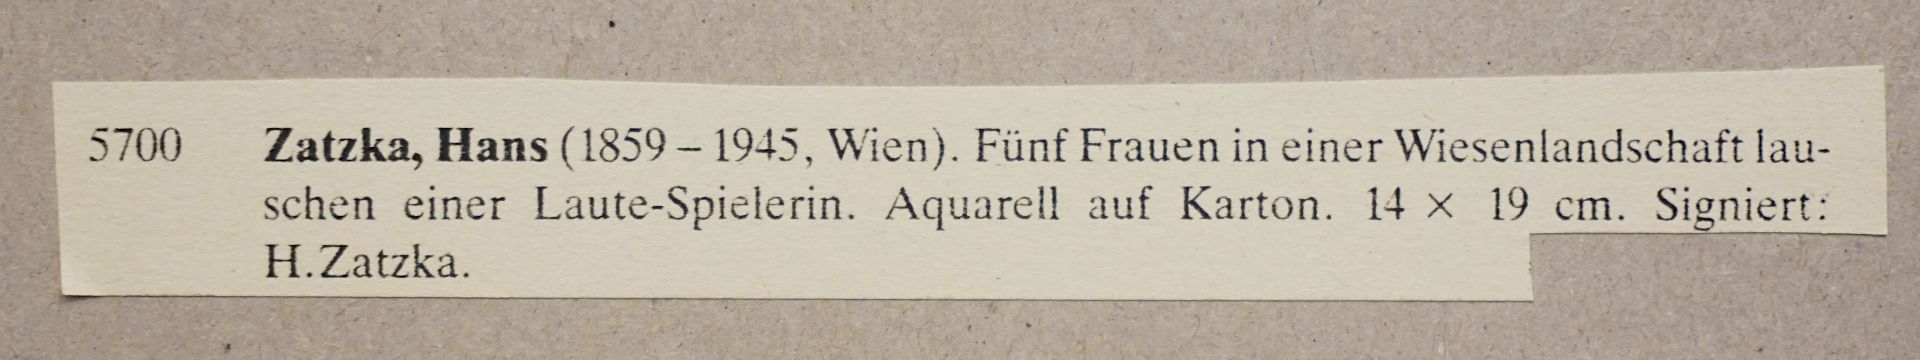 1 Aquarell "Fünf Frauen in einer Wiesenlandschaft lauschen einer Lautenspielerin" R.u. sign. H. ZATZ - Image 5 of 5